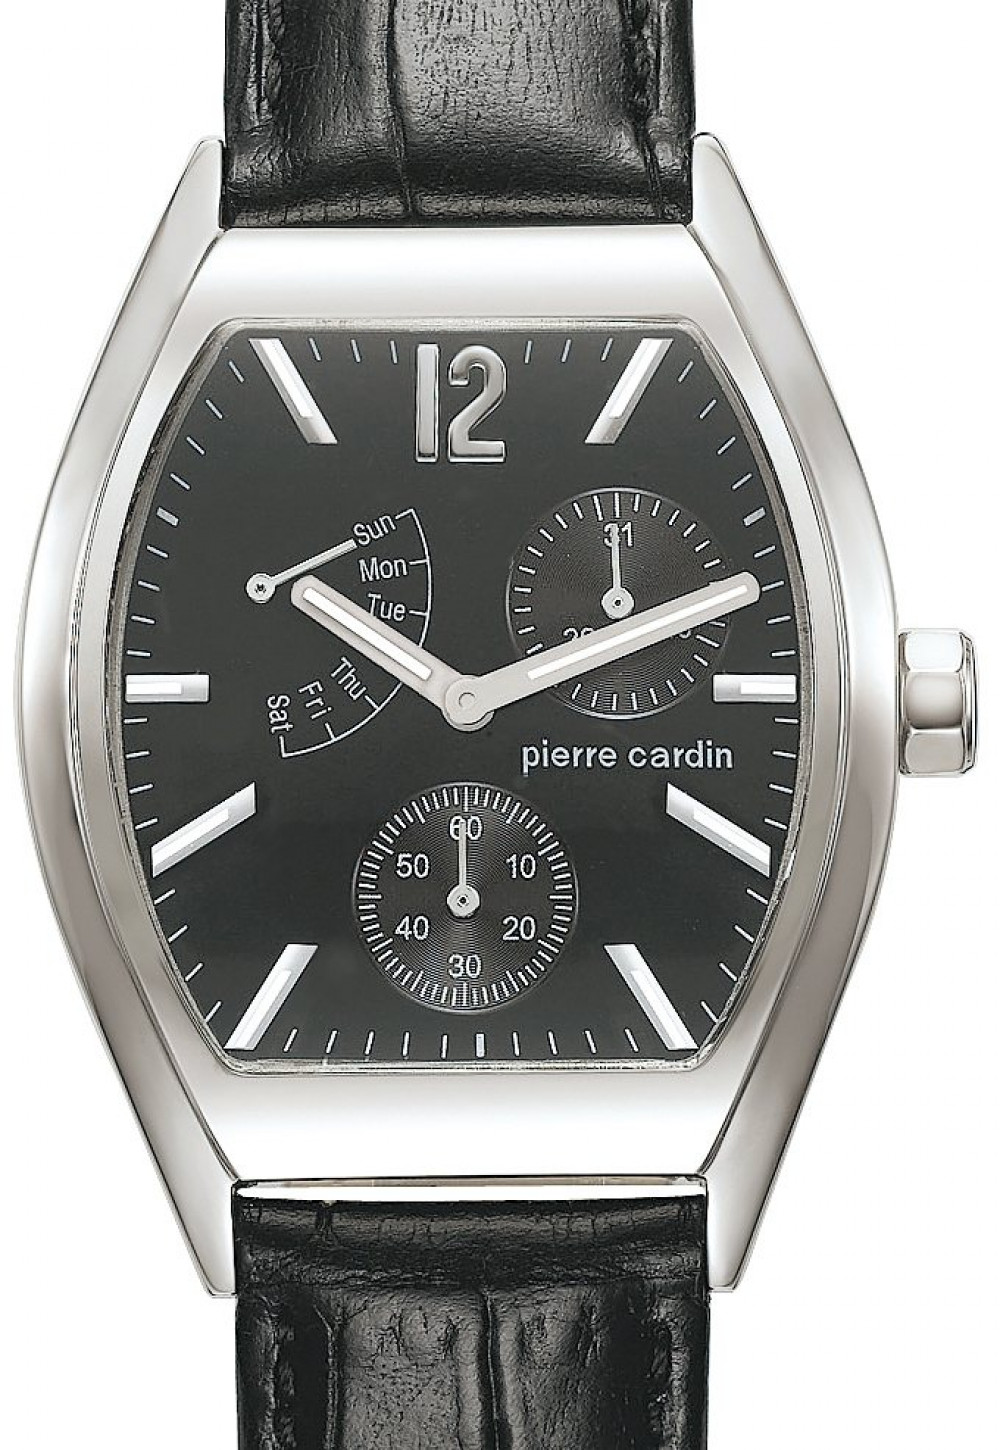 Zegarek firmy Pierre Cardin, model Prélude Multifunktion